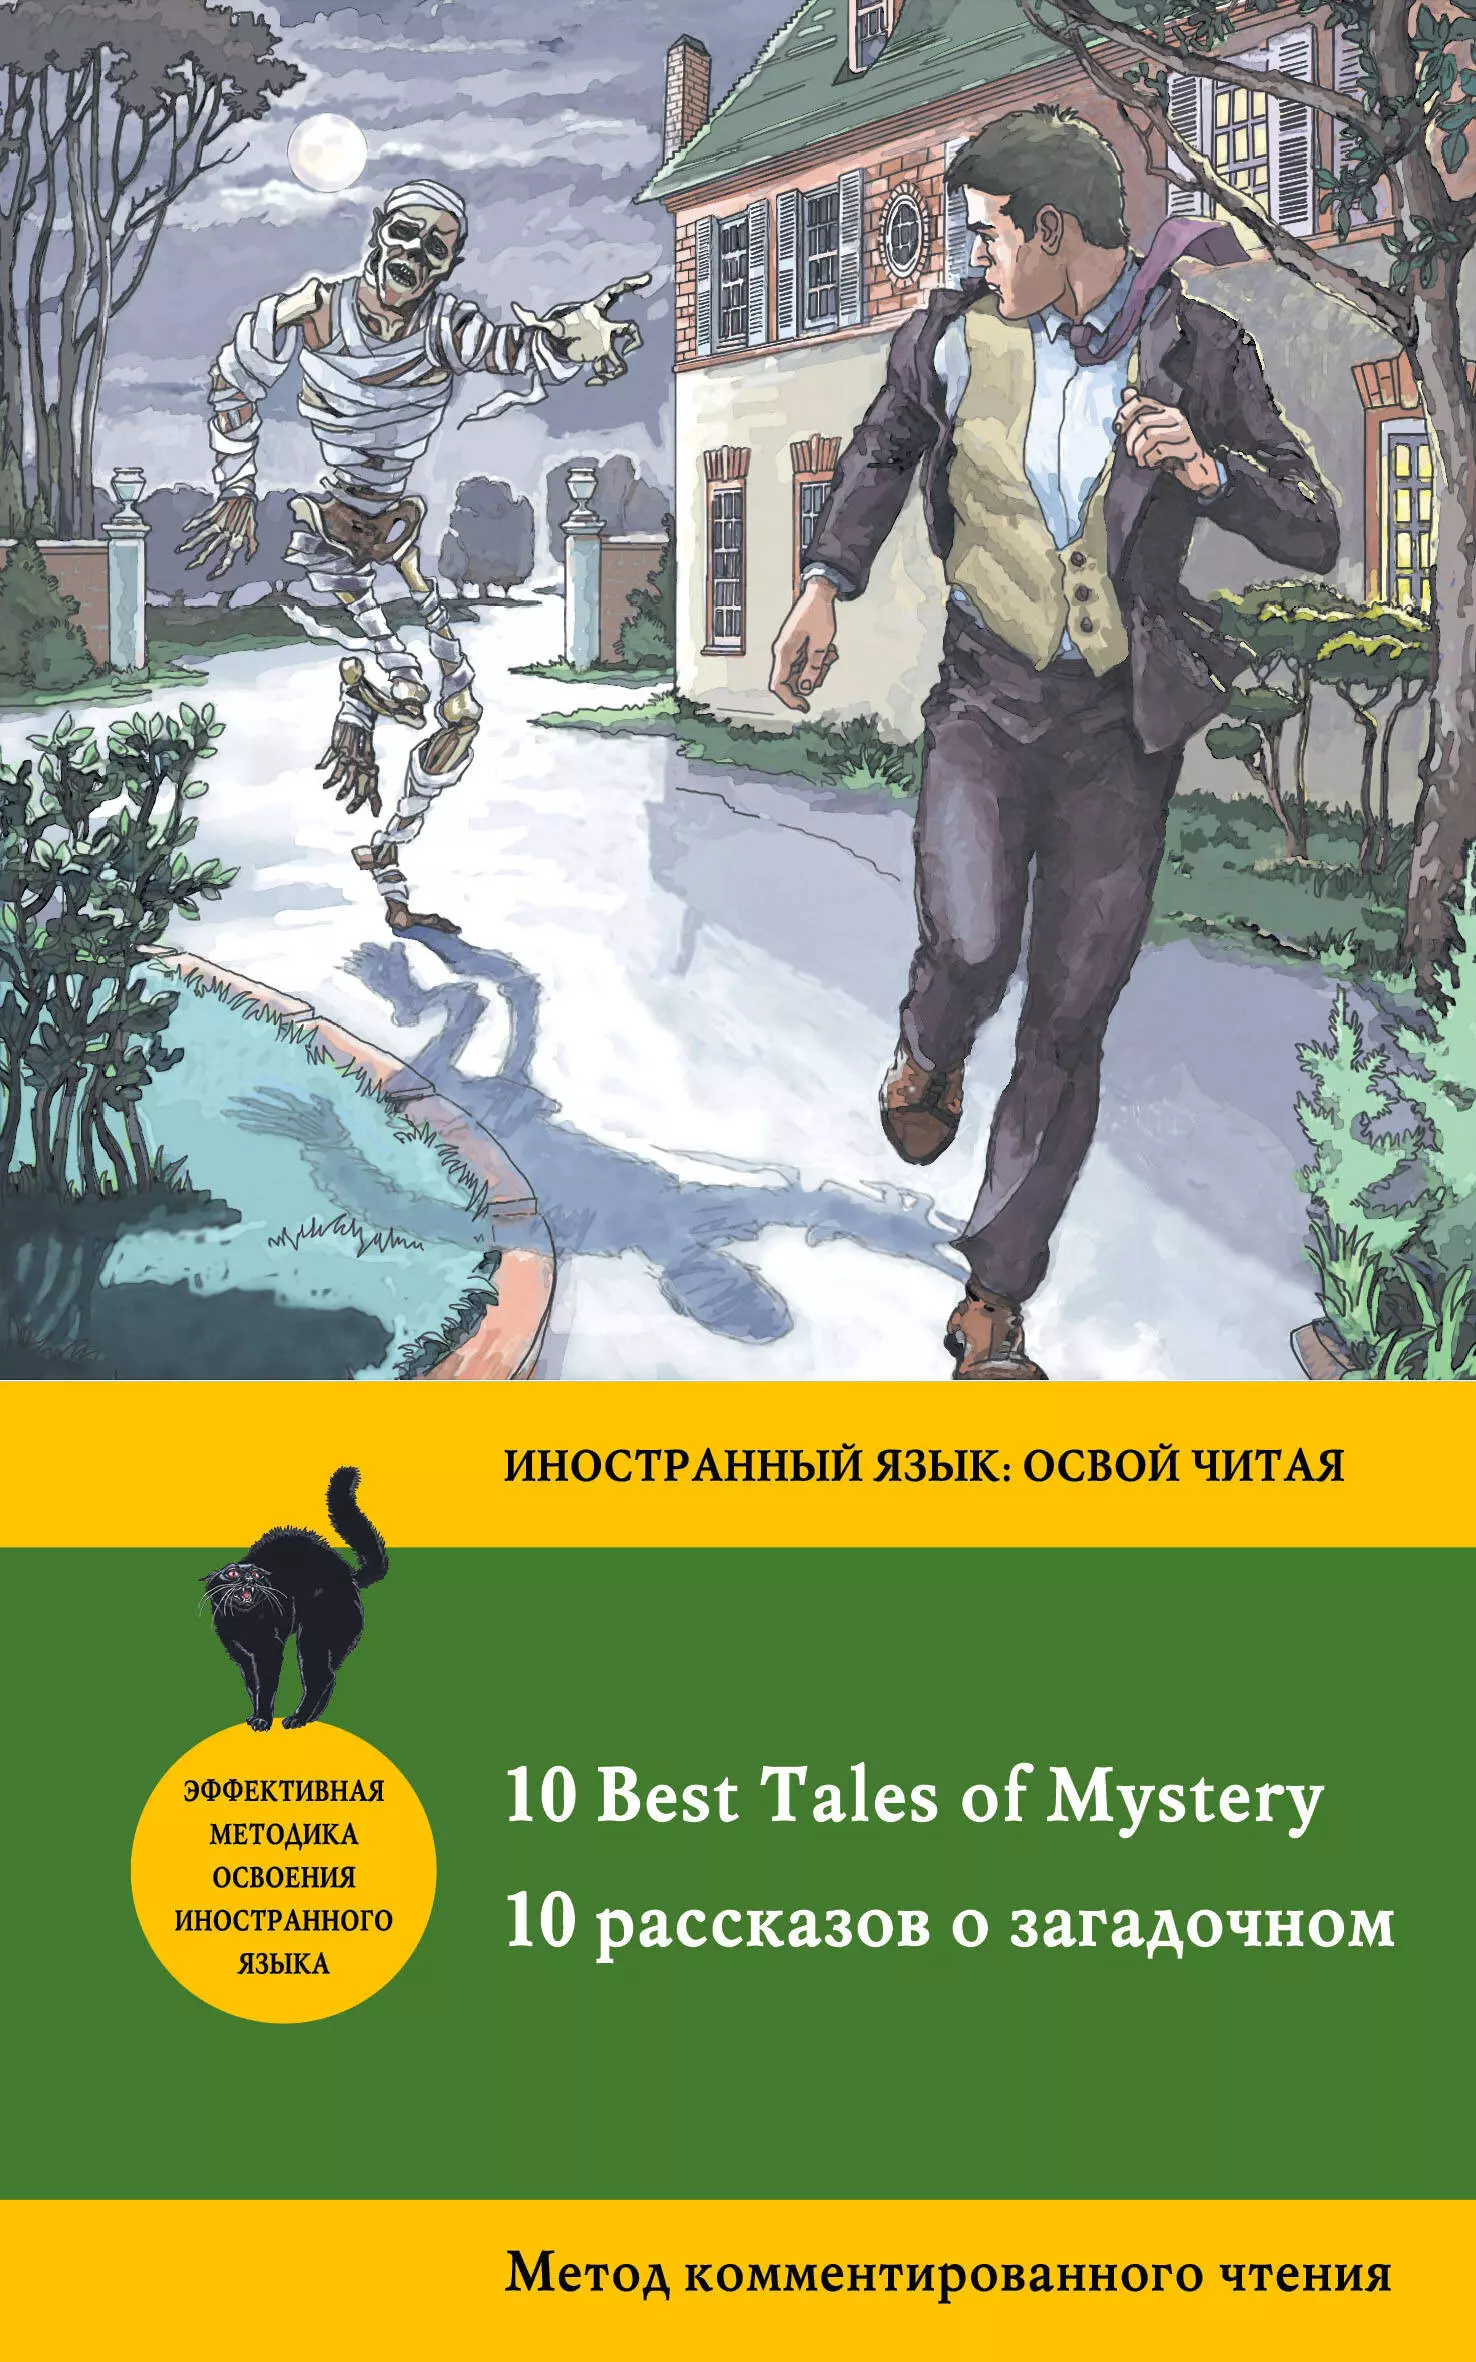 Бенсон Эдвард Фредерик, Поповец Л.А. - 10 рассказов о загадочном = 10 Best Tales of Mystery: метод комментированного чтения